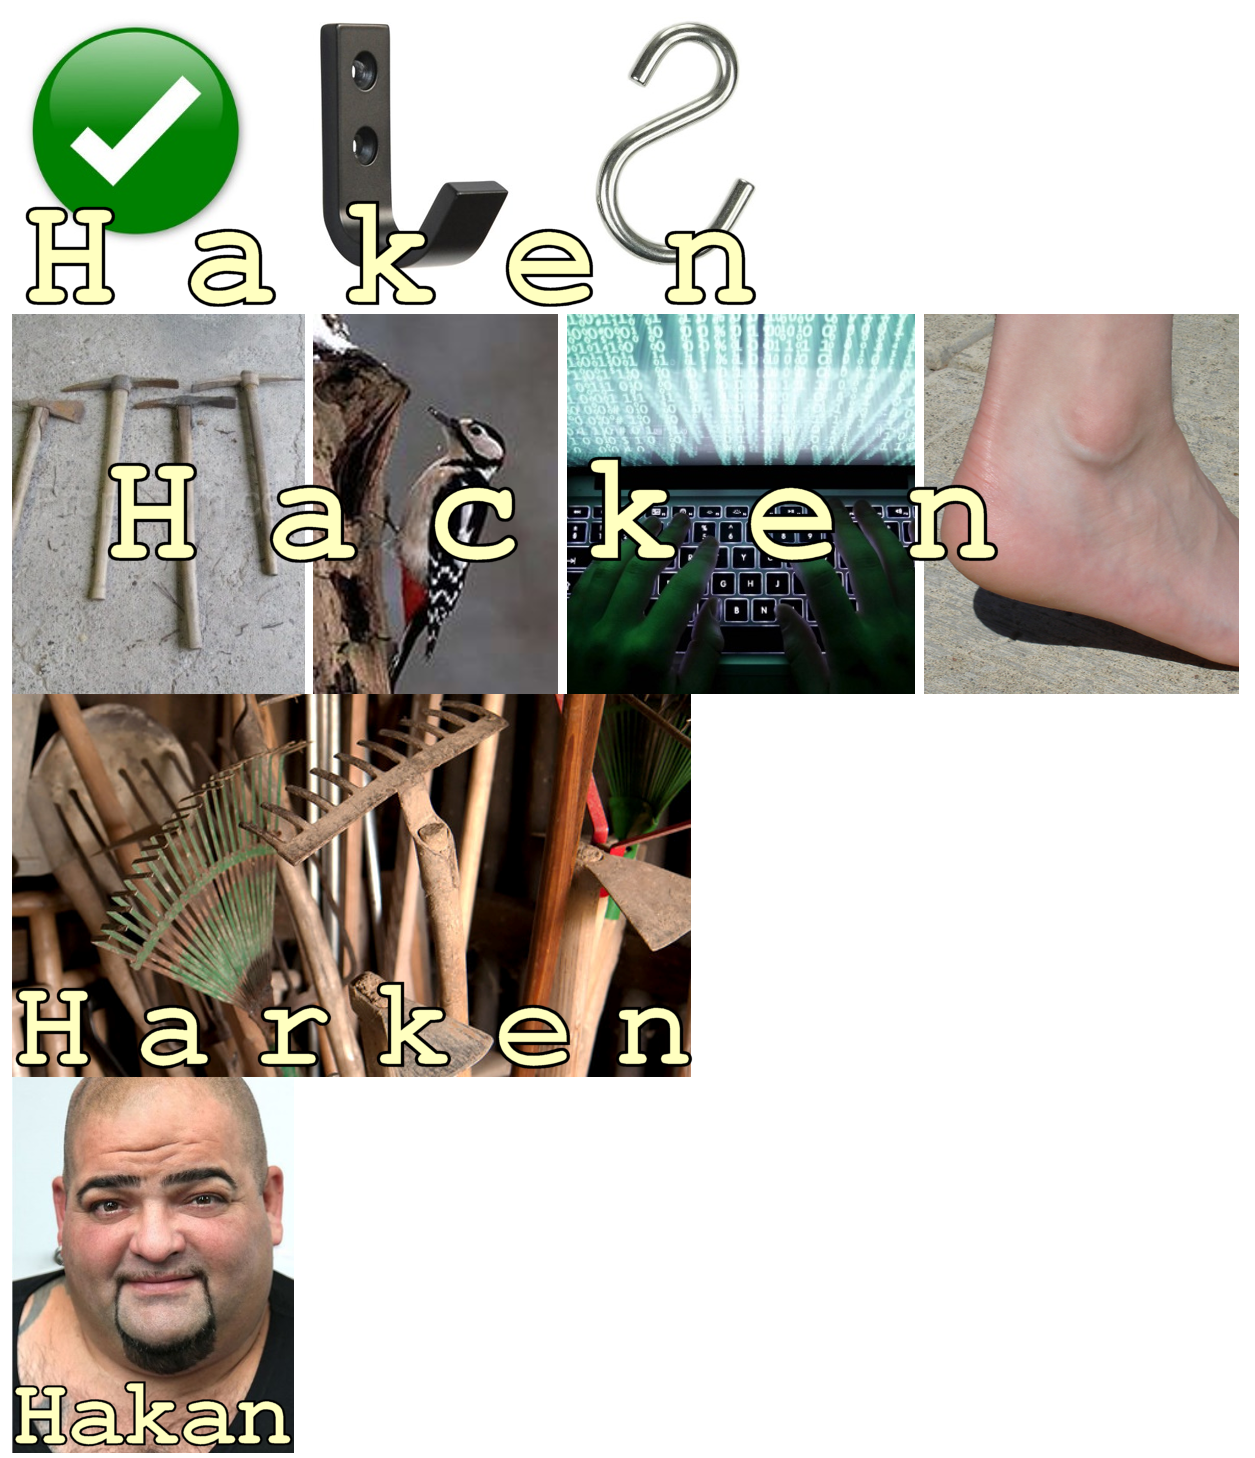 Hacken.png